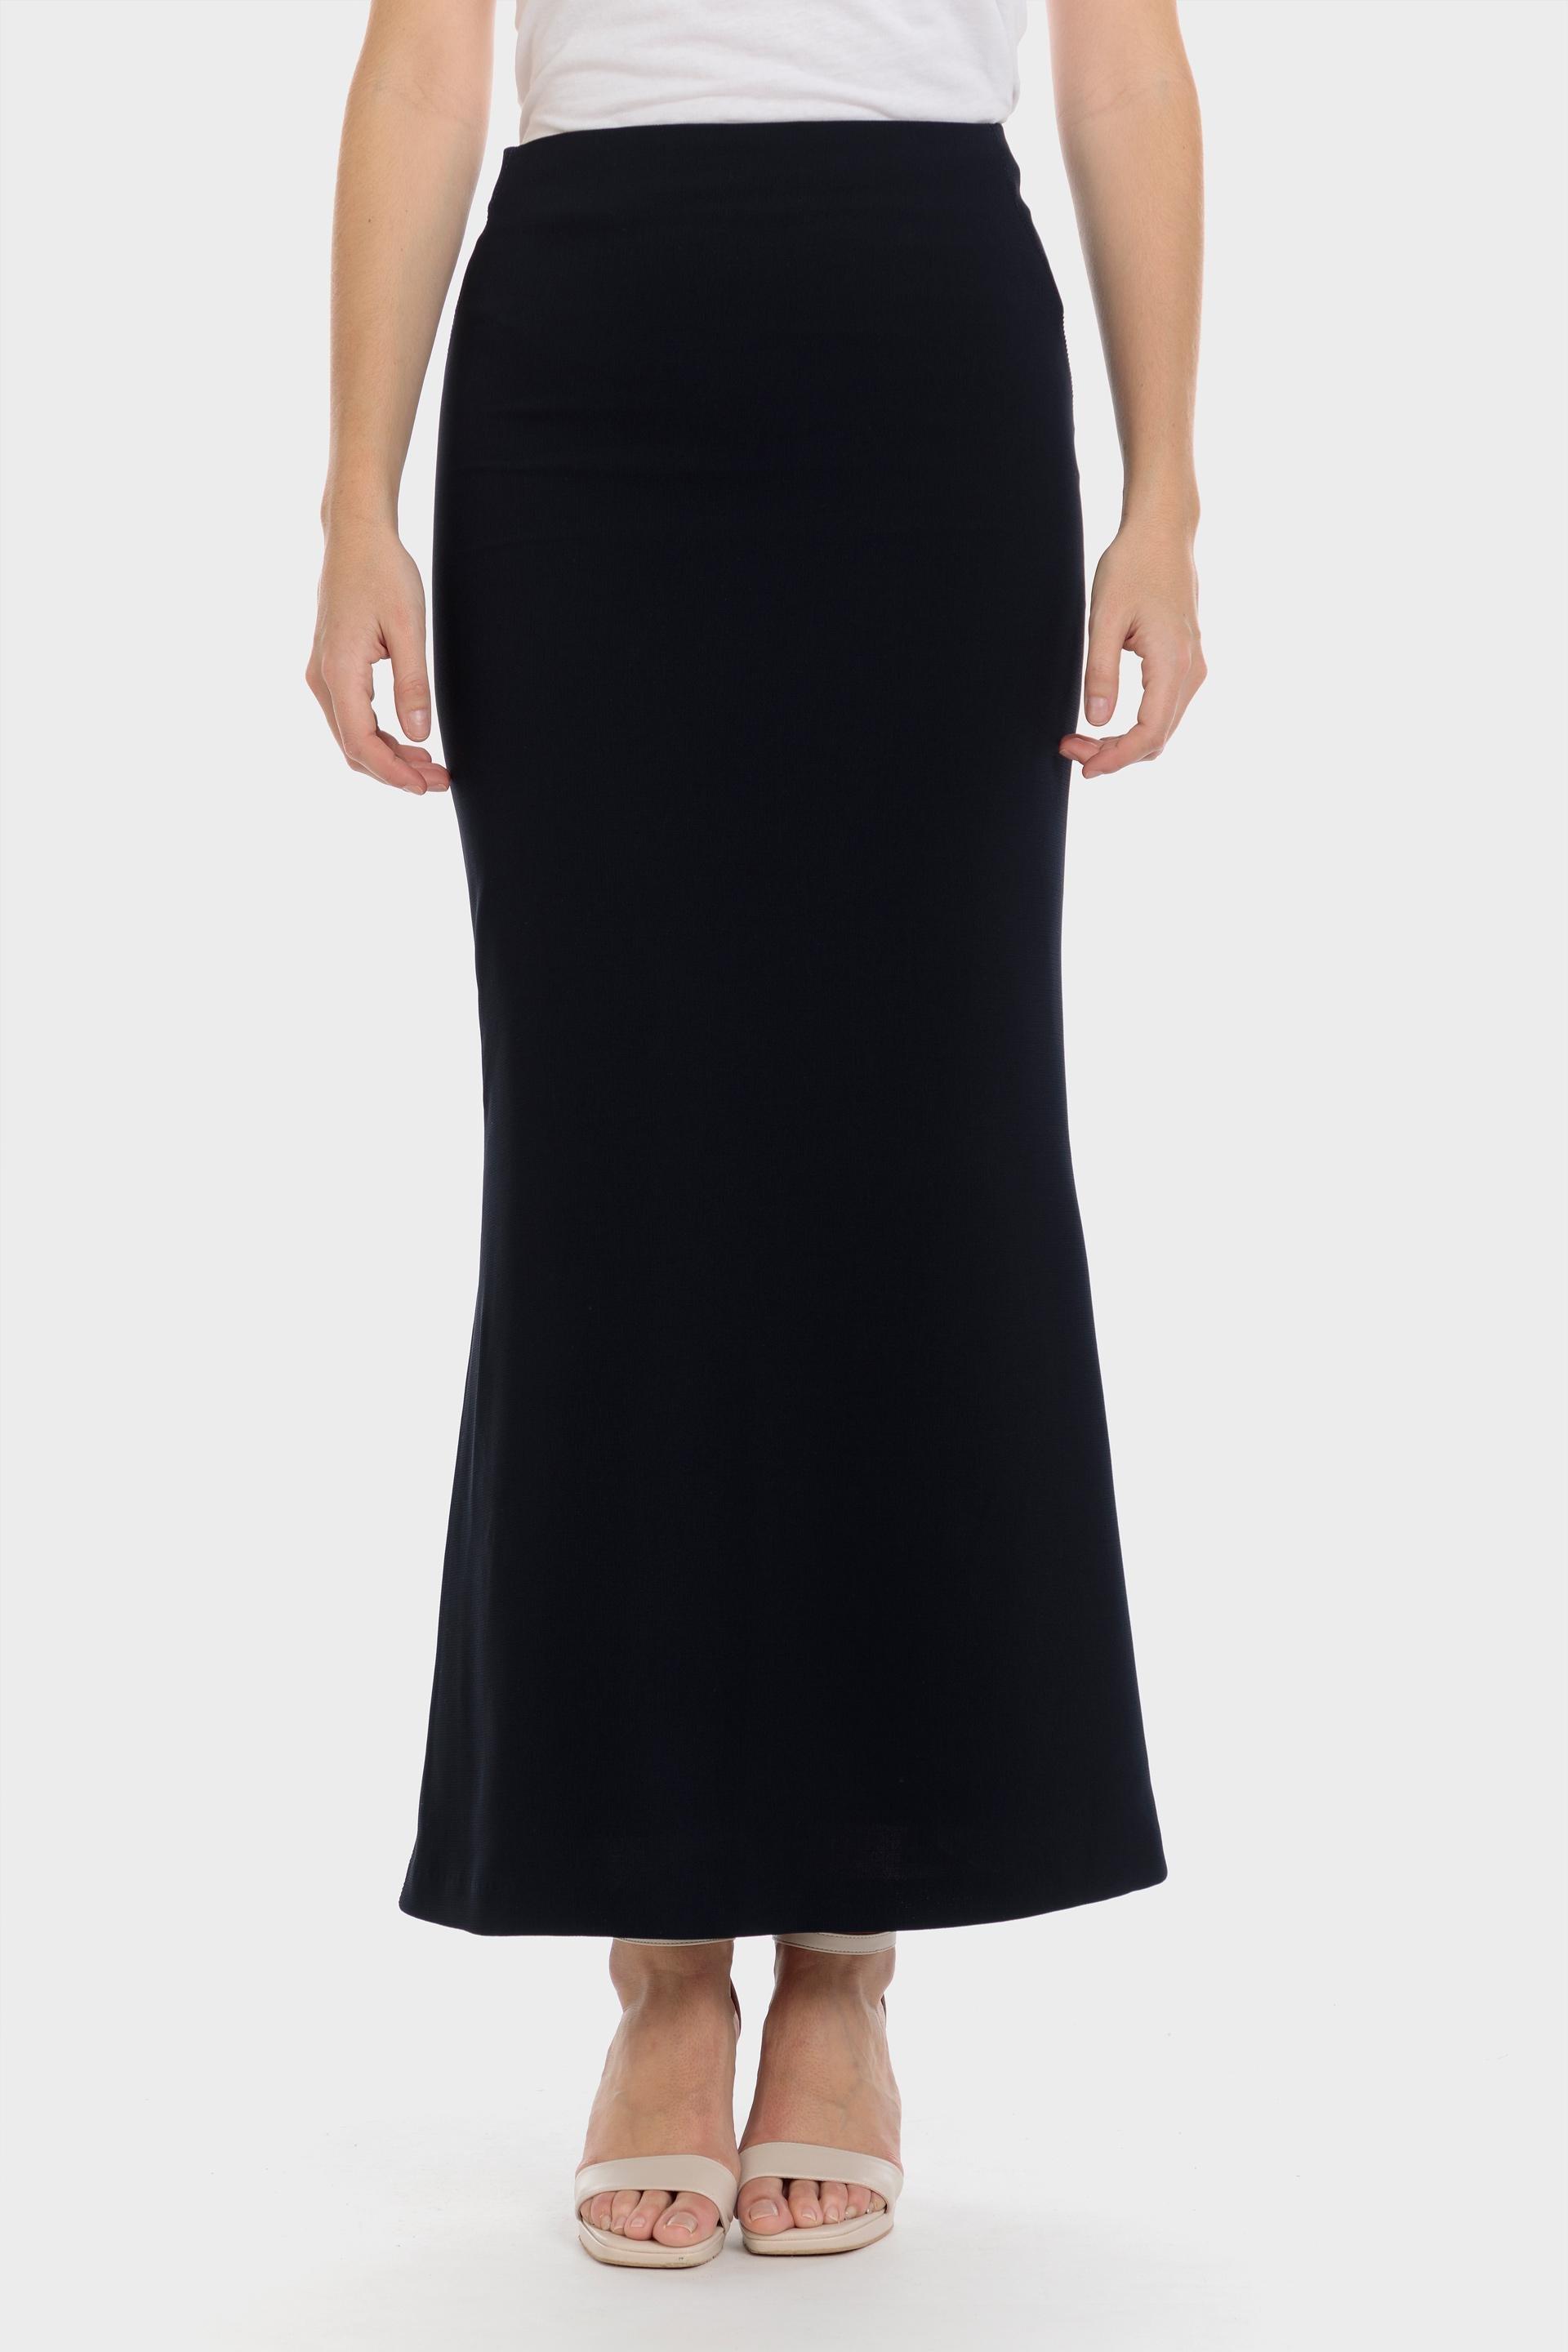 Punt Roma - Long crepe skirt